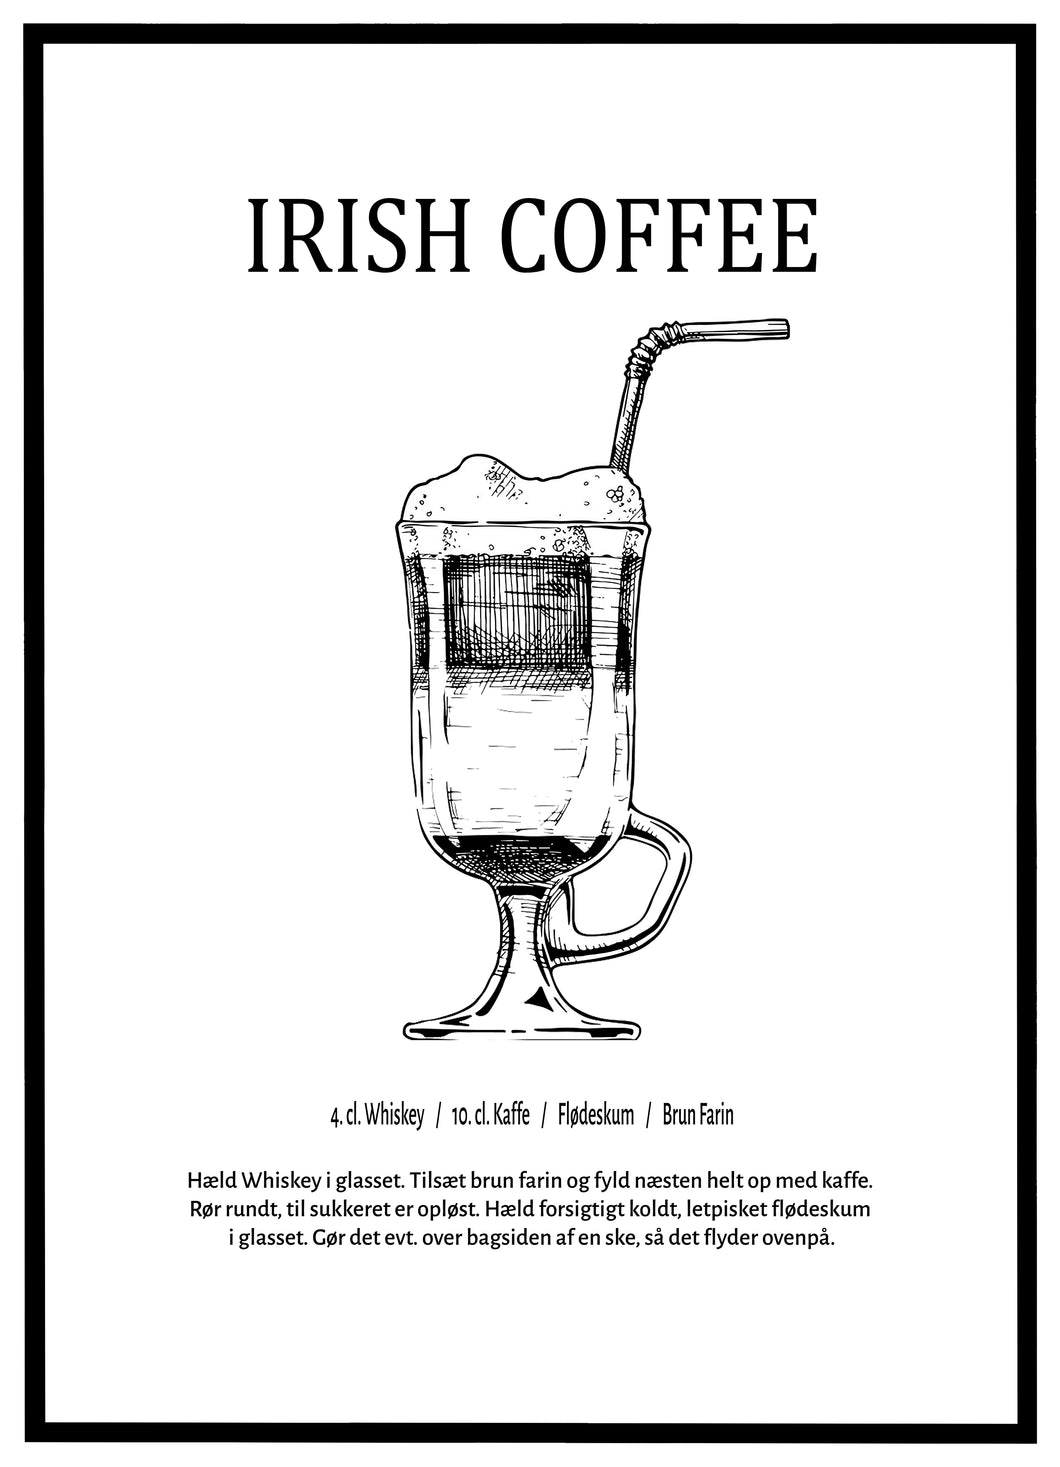 Irish Coffee - Plakat